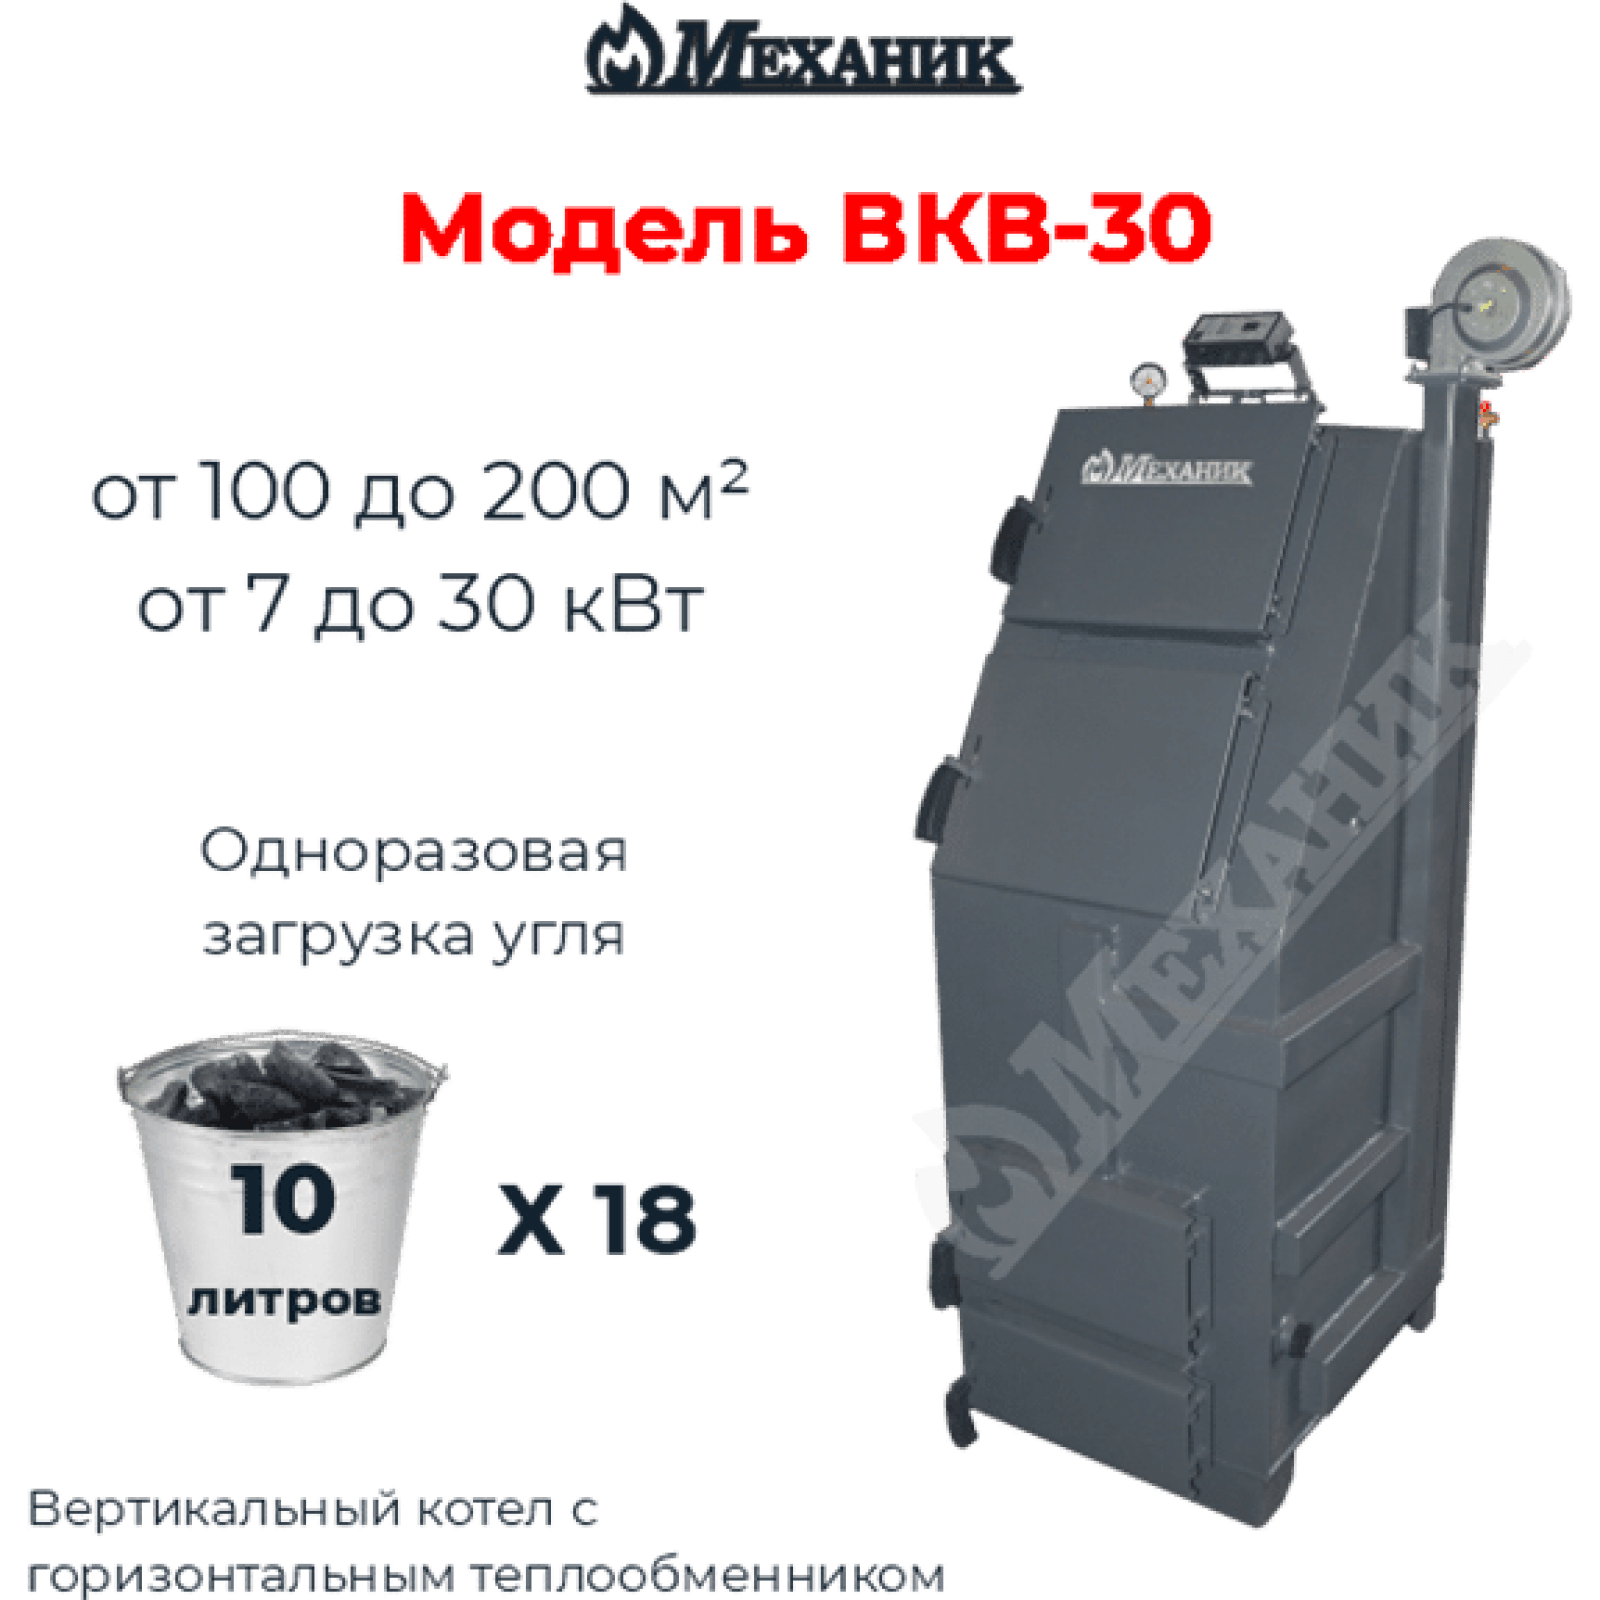 ВКВ-30